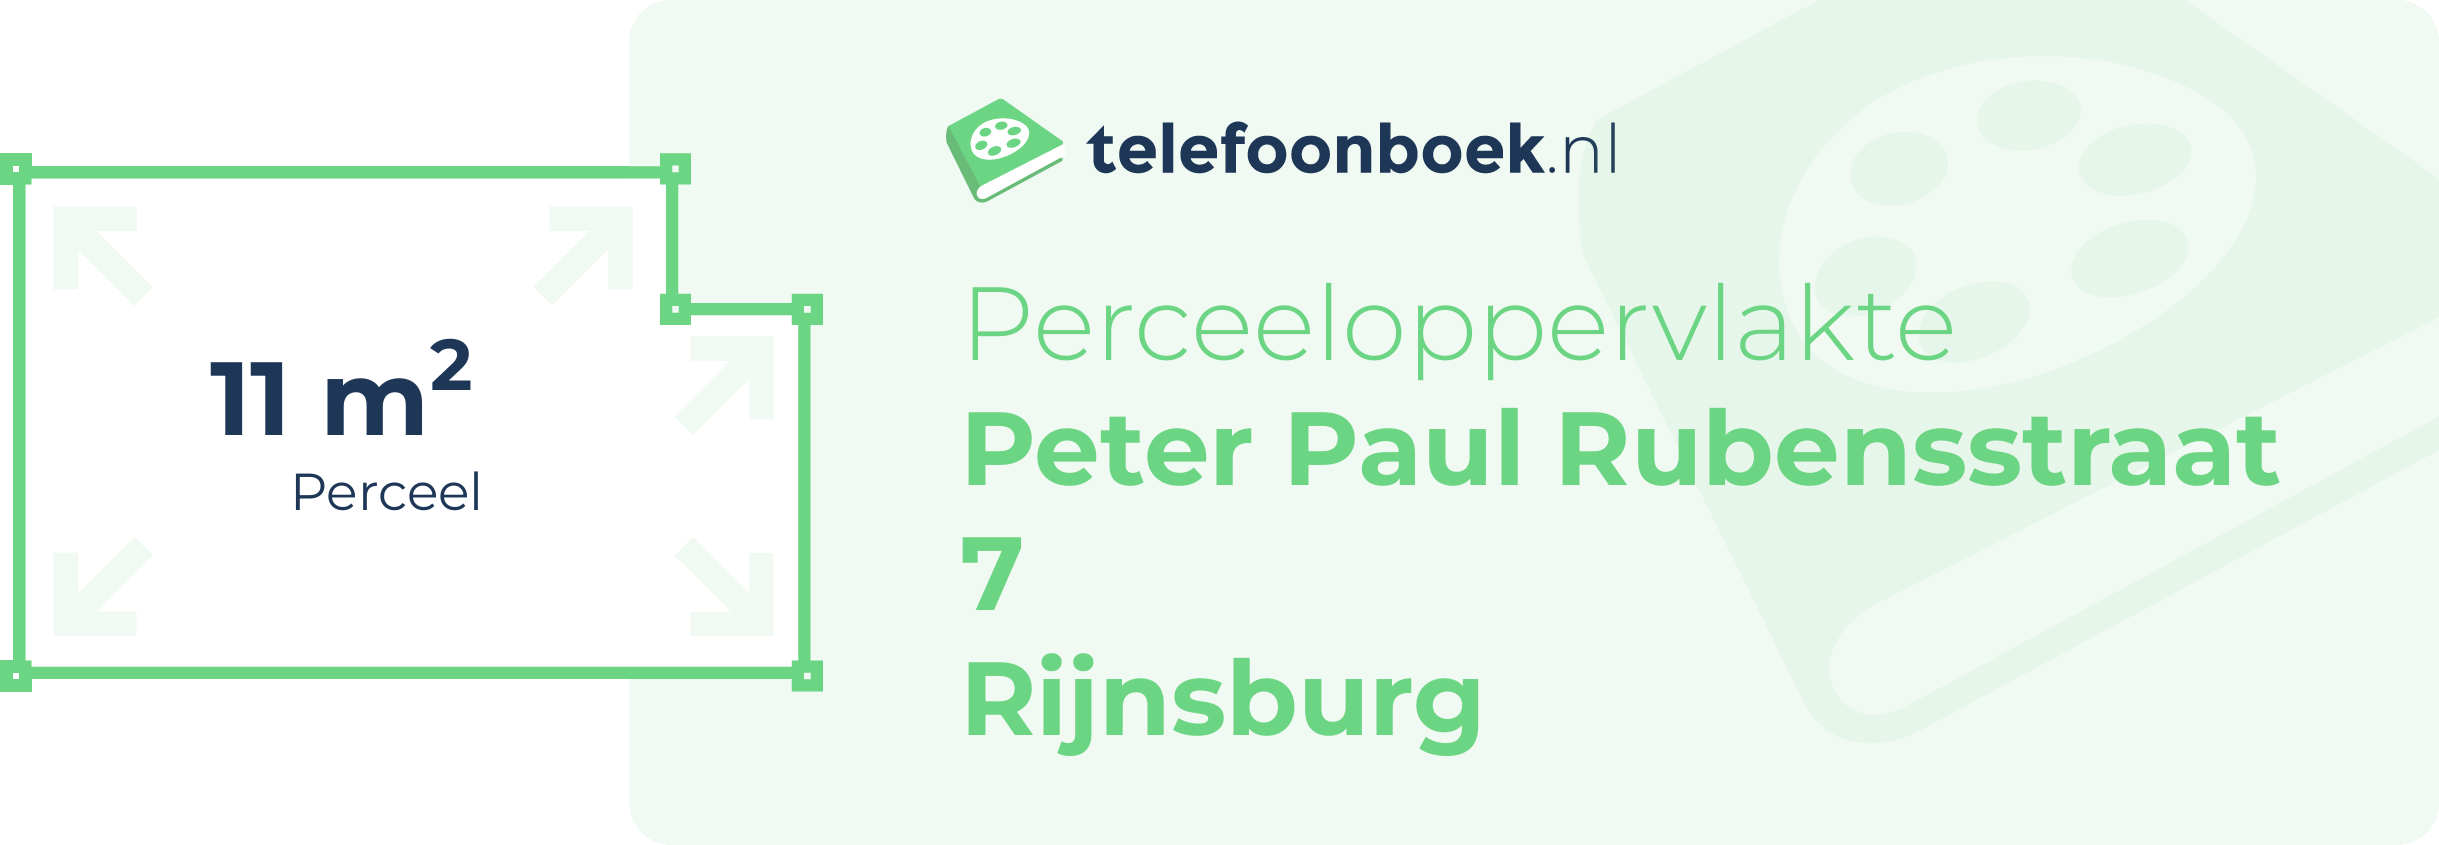 Perceeloppervlakte Peter Paul Rubensstraat 7 Rijnsburg